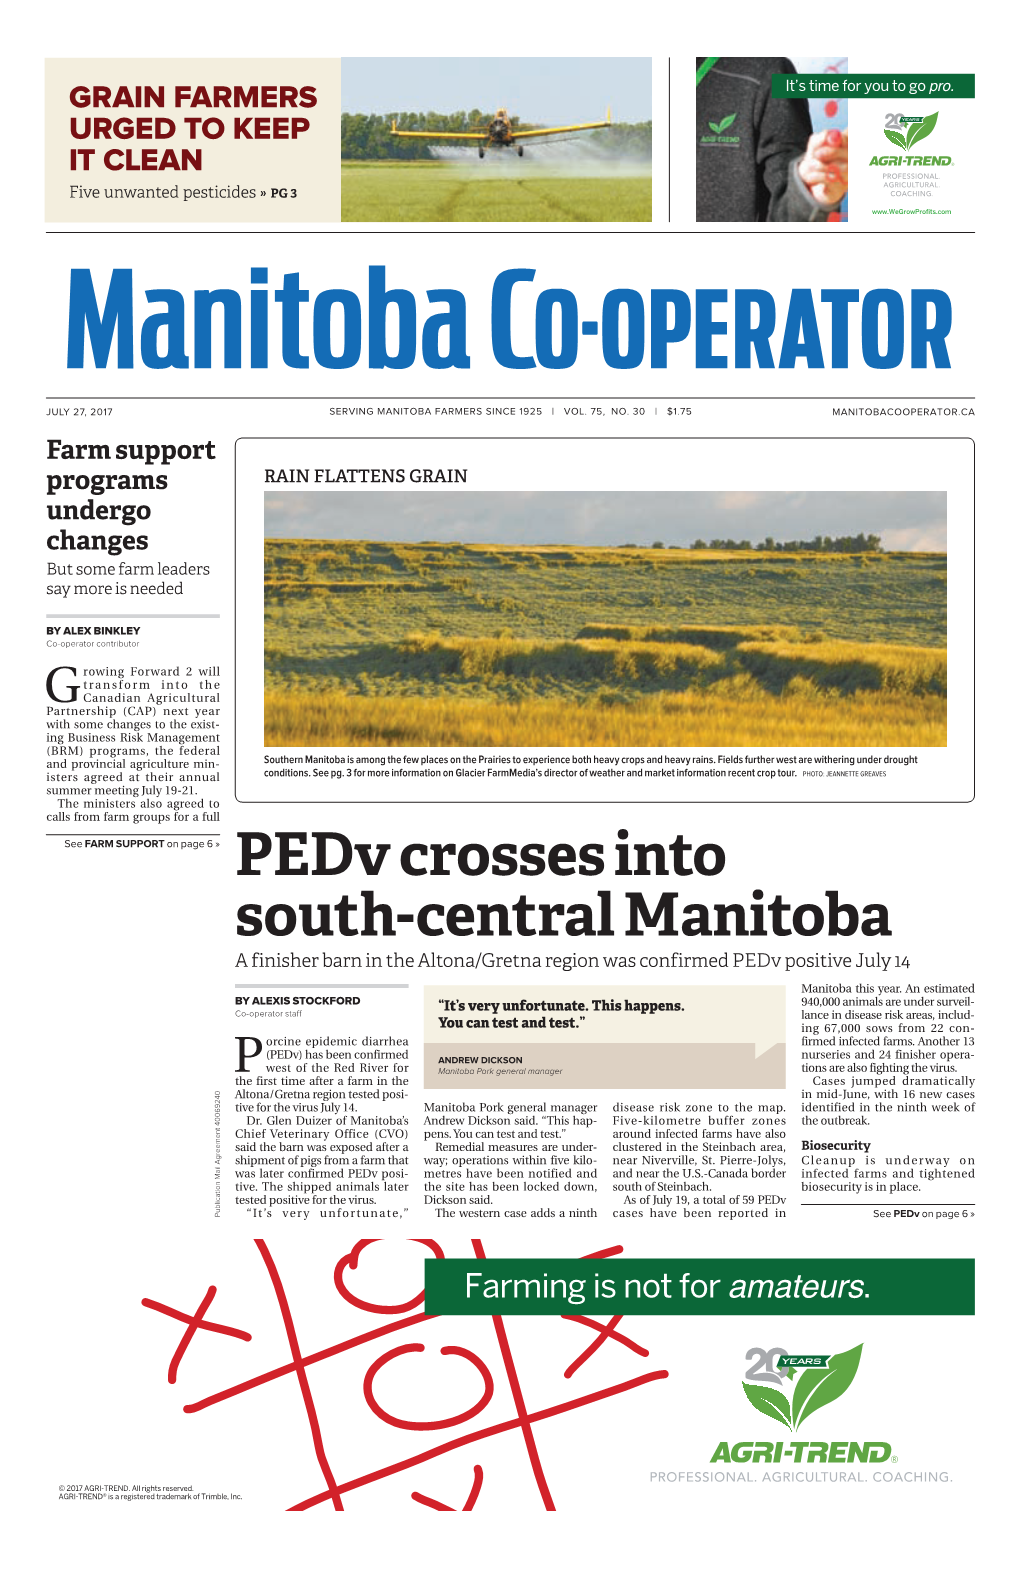 Pedv Crosses Into South-Central Manitoba